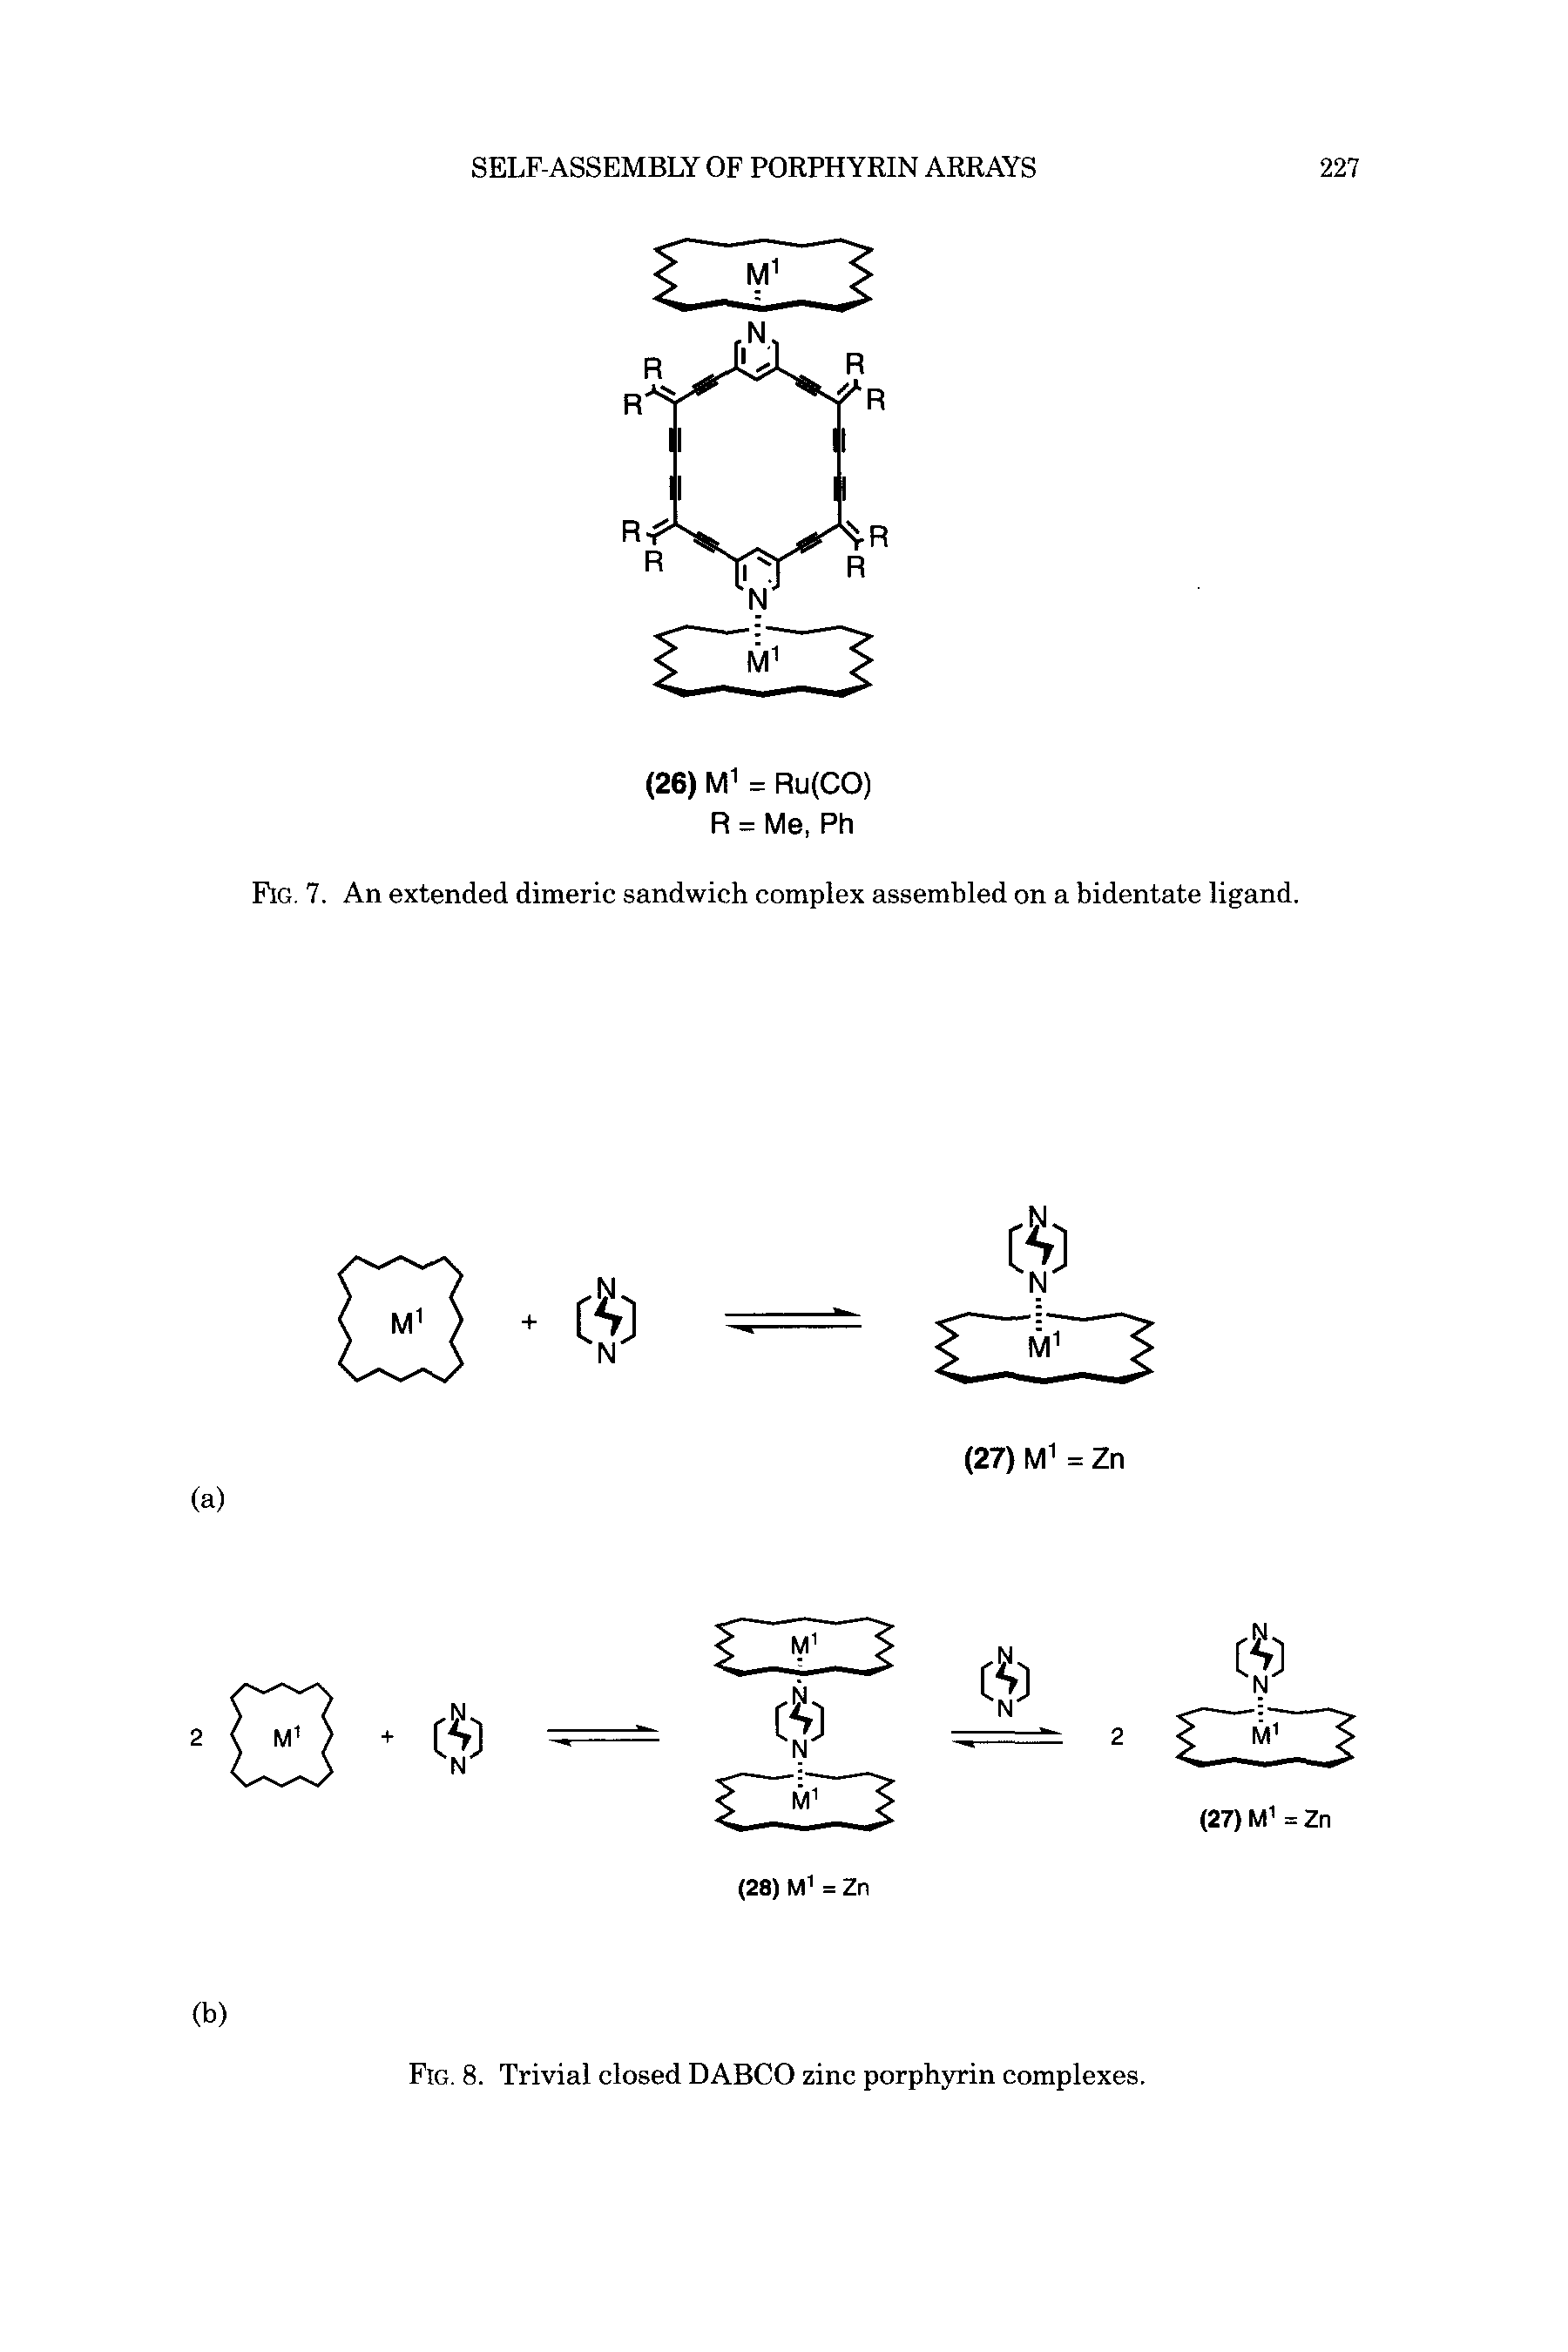 Fig. 8. Trivial closed DABCO zinc porphyrin complexes.